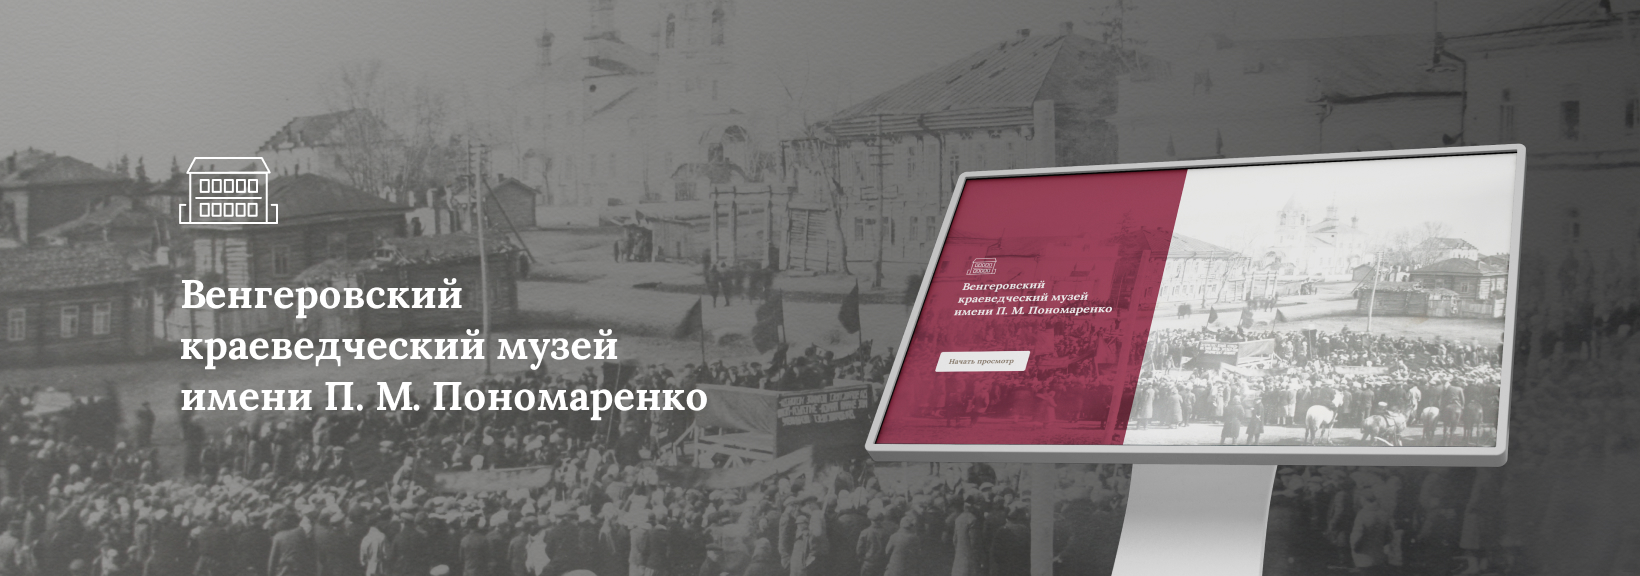 Программное обеспечение для Венгеровского краеведческого музея